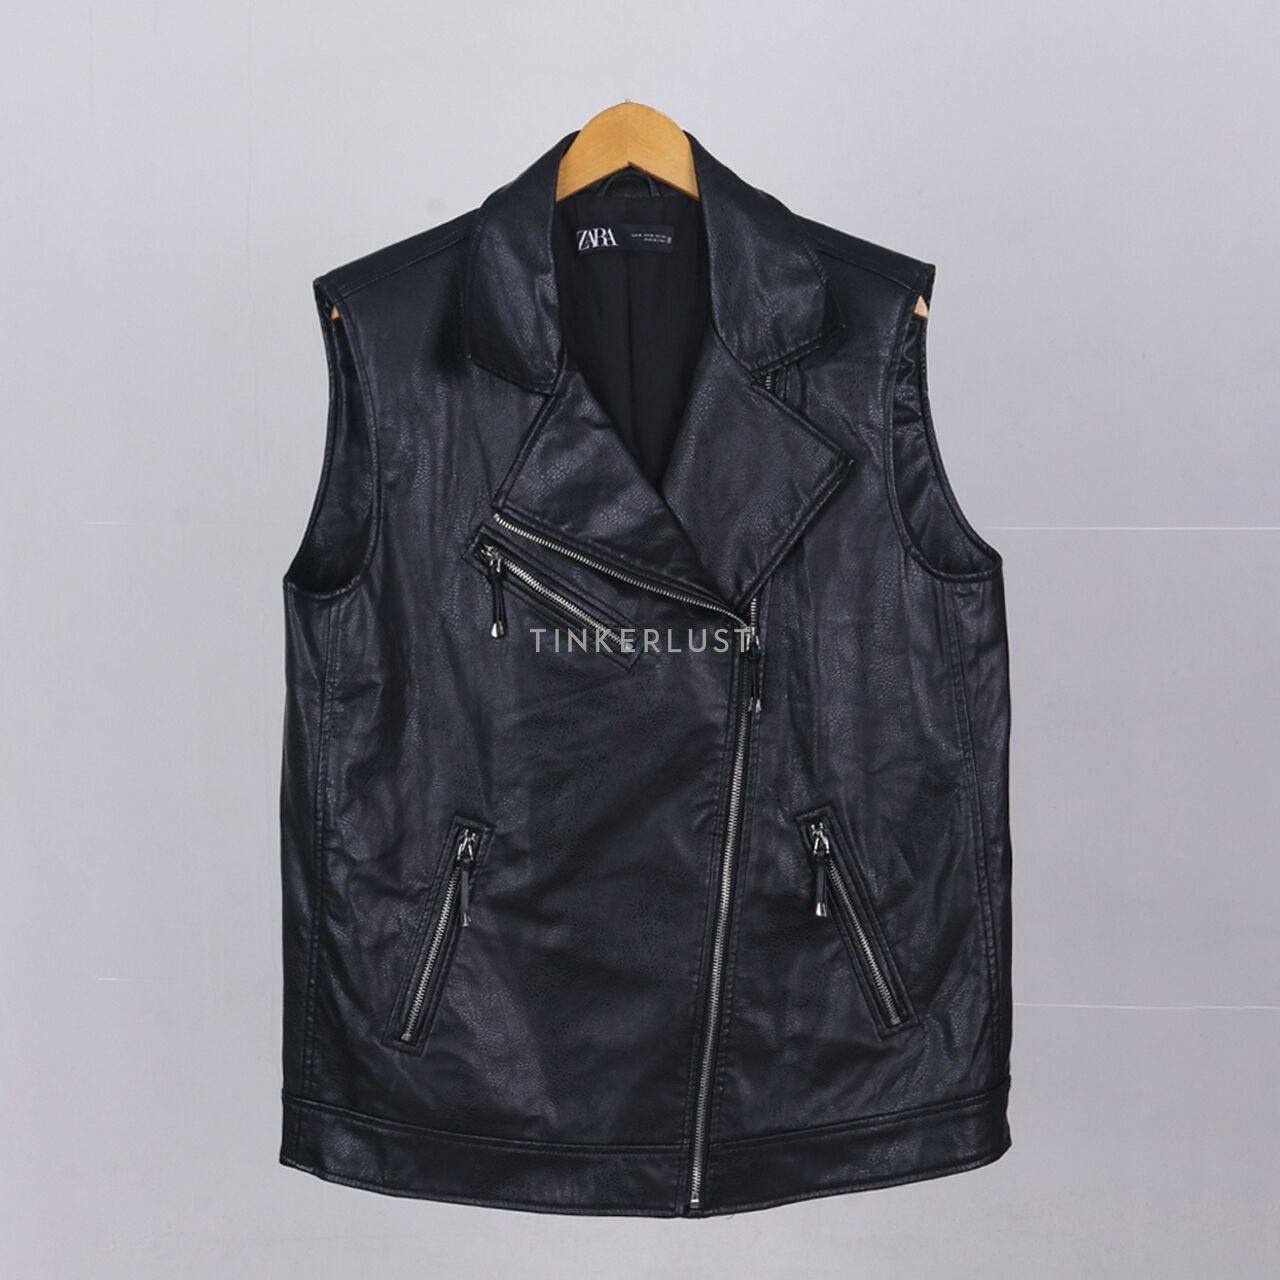 Zara Black Leather Vest